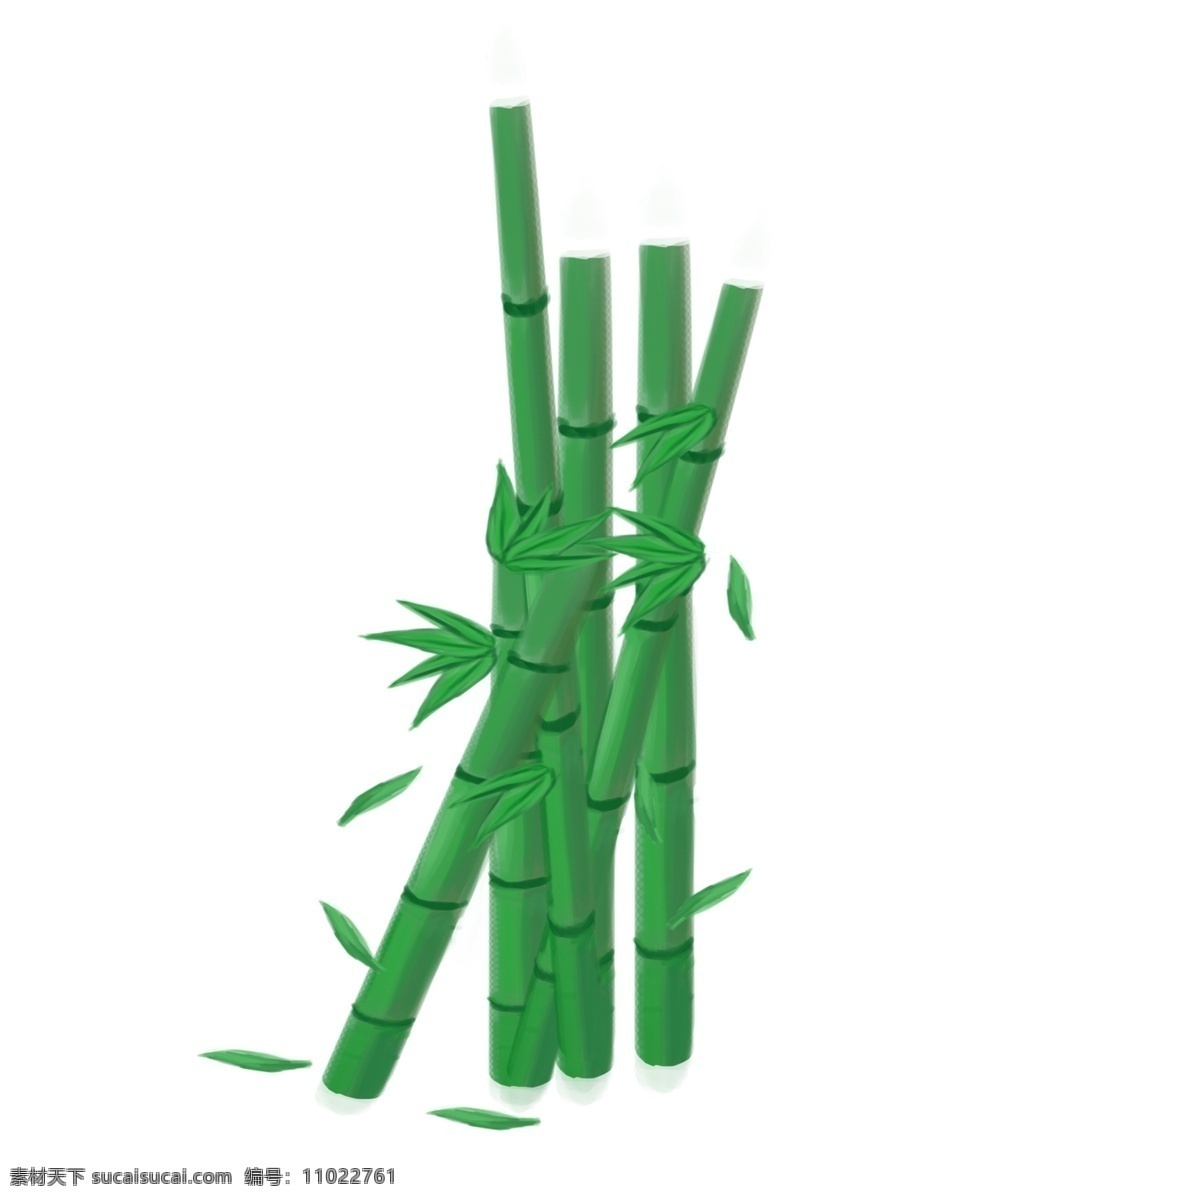 春天 竹子 用于 气节 点缀 手绘 不规则图形 透明底 无背景 免抠 平面设计 立体设计 装饰图案 装饰设计 原创